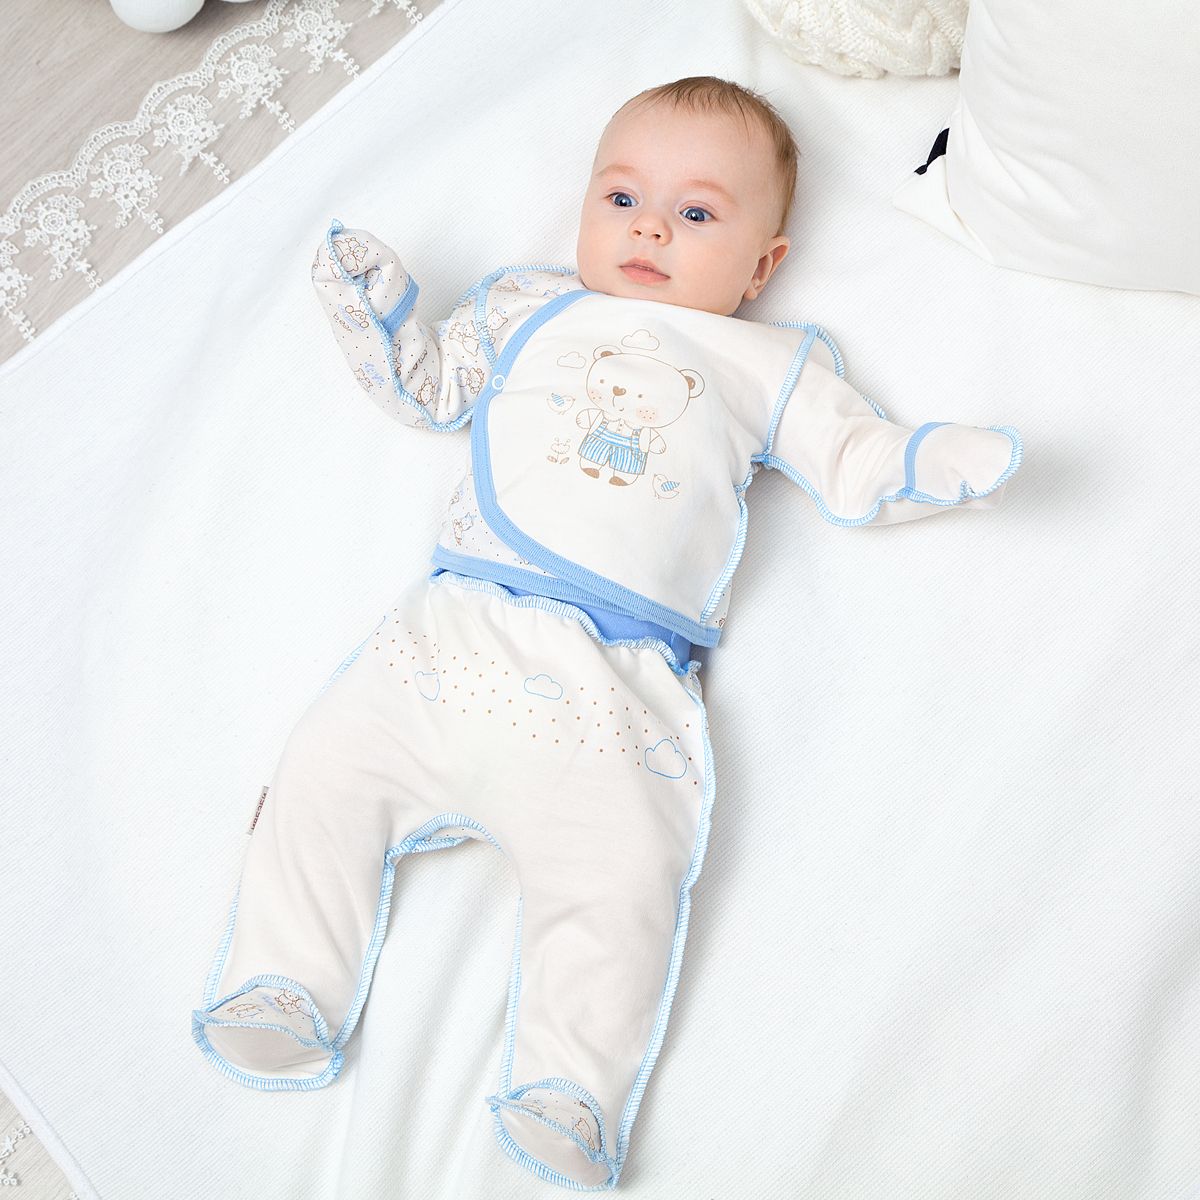 Пижама или слип - какой комплект для сна предпочтительней и удобней малышам